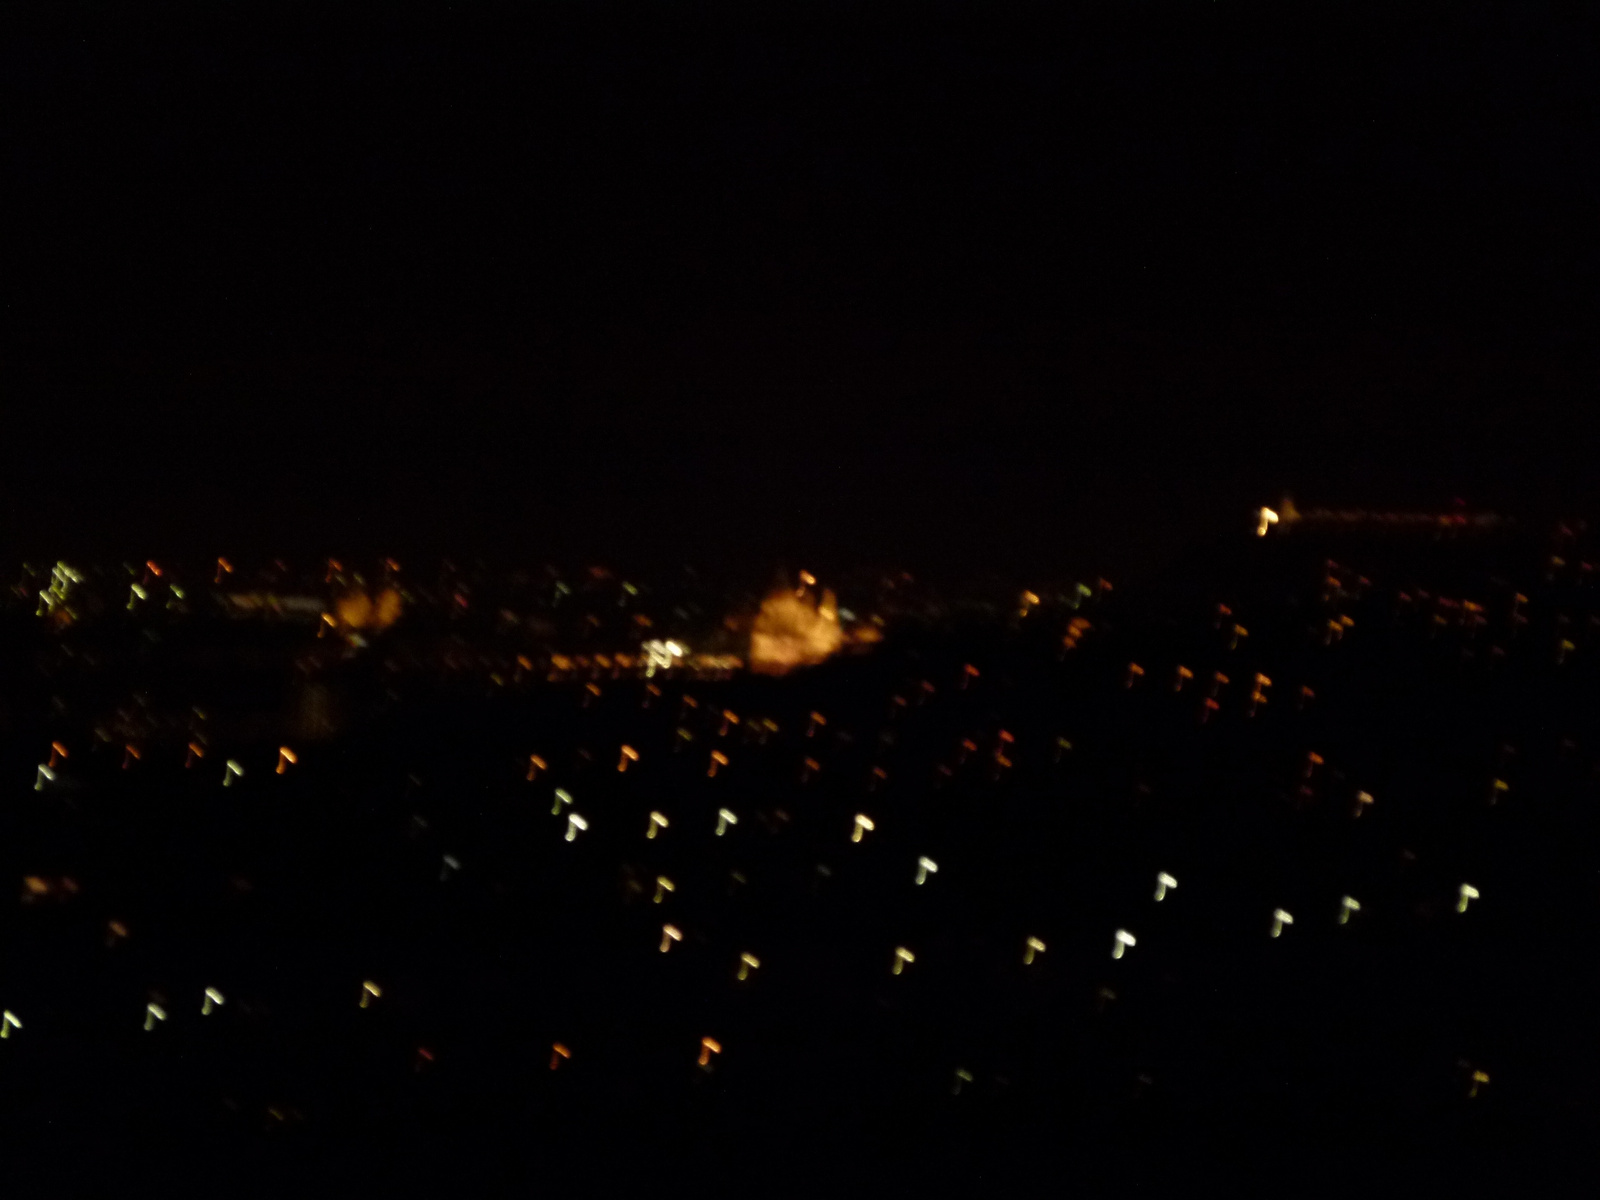 Budapesti fények (P1090560)